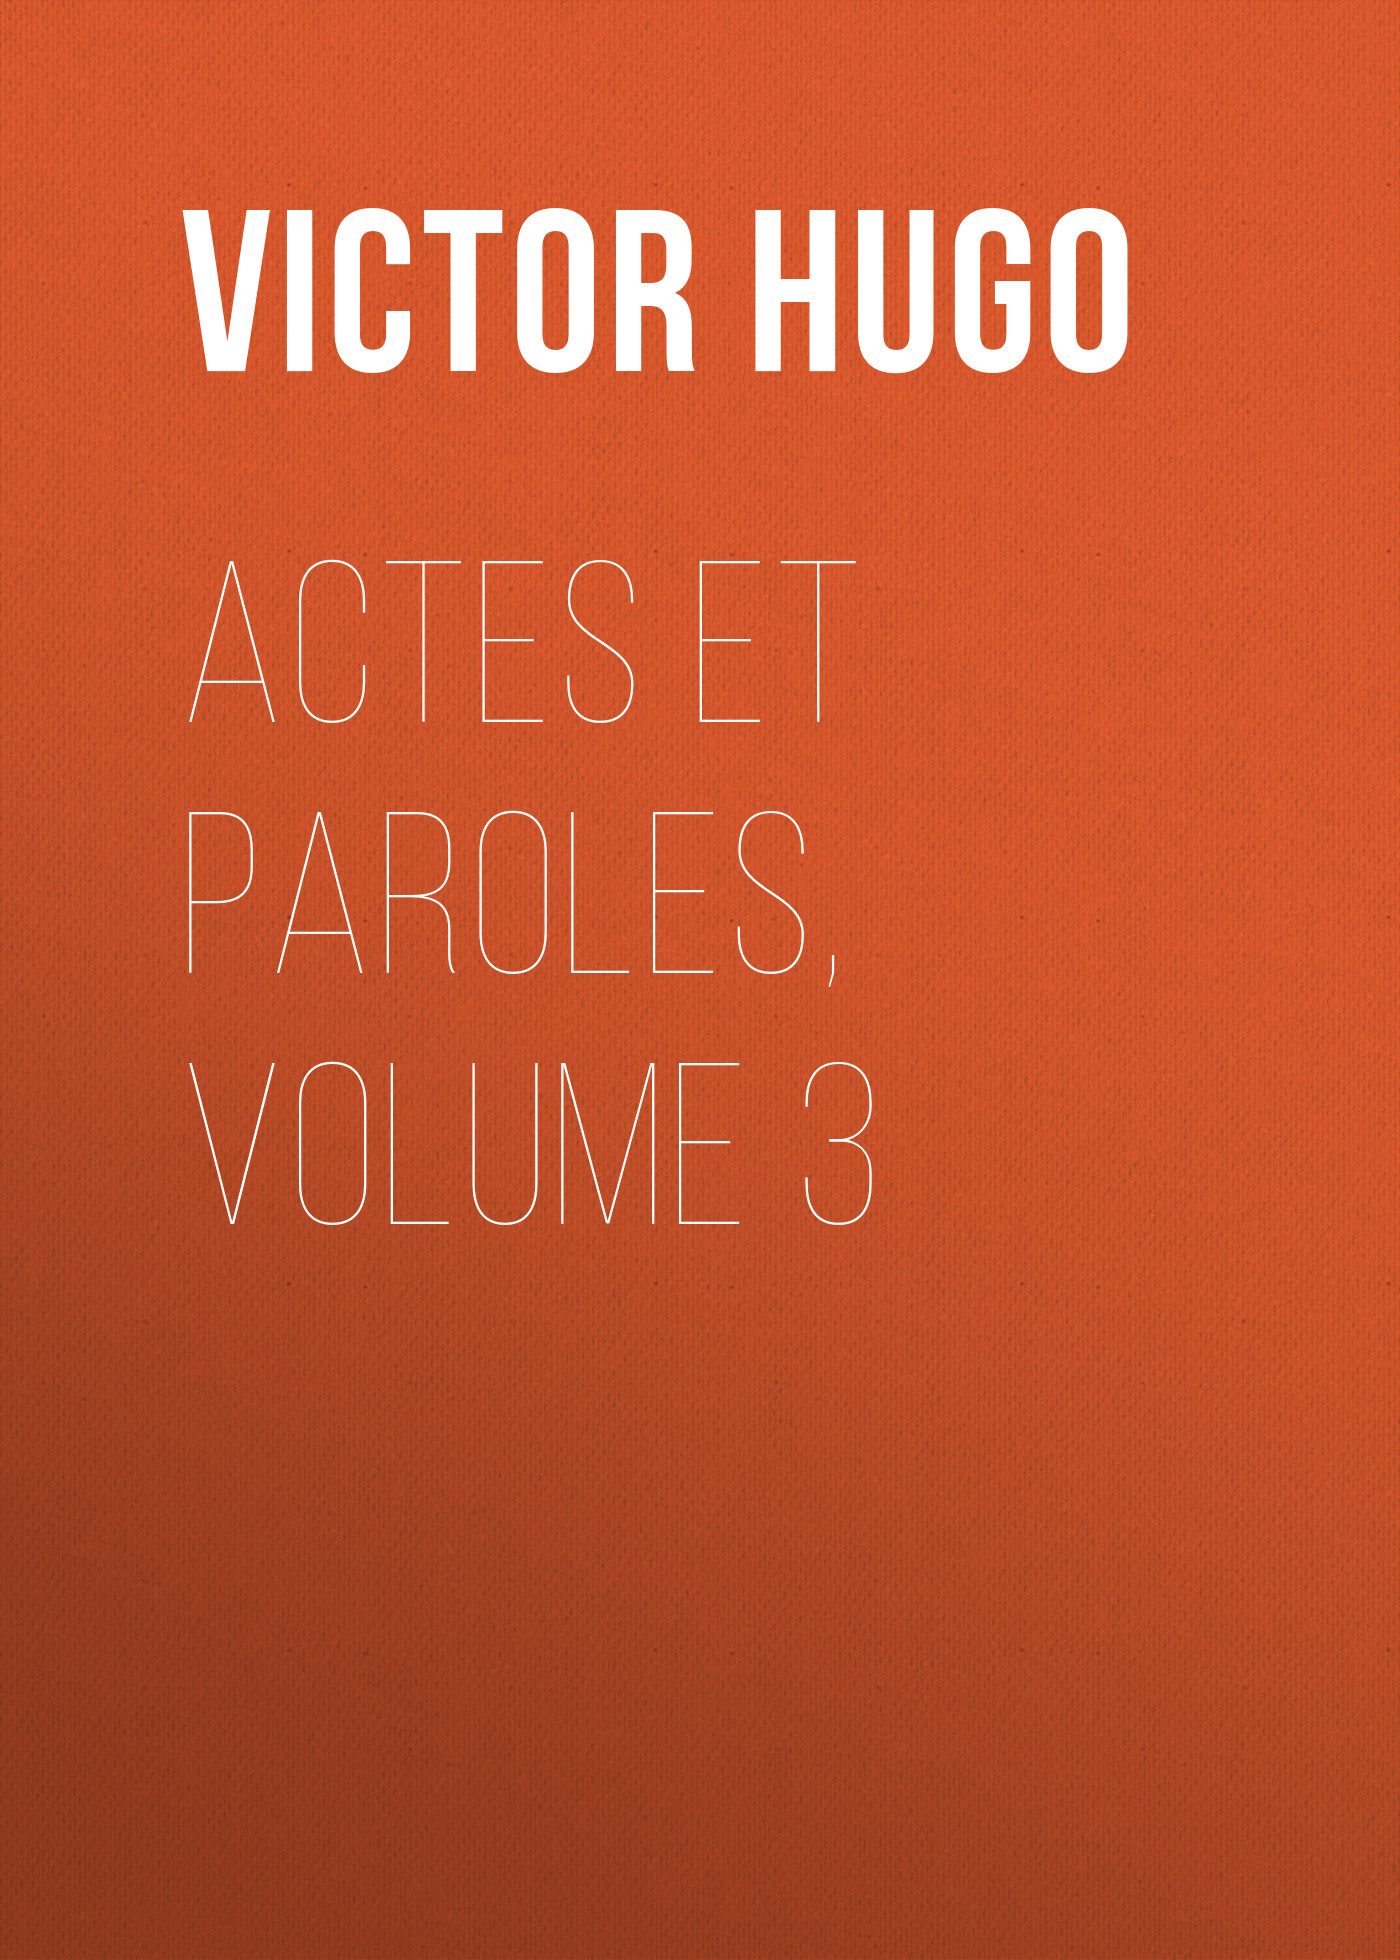 Книга Actes et Paroles, Volume 3 из серии , созданная Victor Hugo, может относится к жанру Литература 19 века, Зарубежная старинная литература, Зарубежная классика. Стоимость электронной книги Actes et Paroles, Volume 3 с идентификатором 25230044 составляет 0 руб.